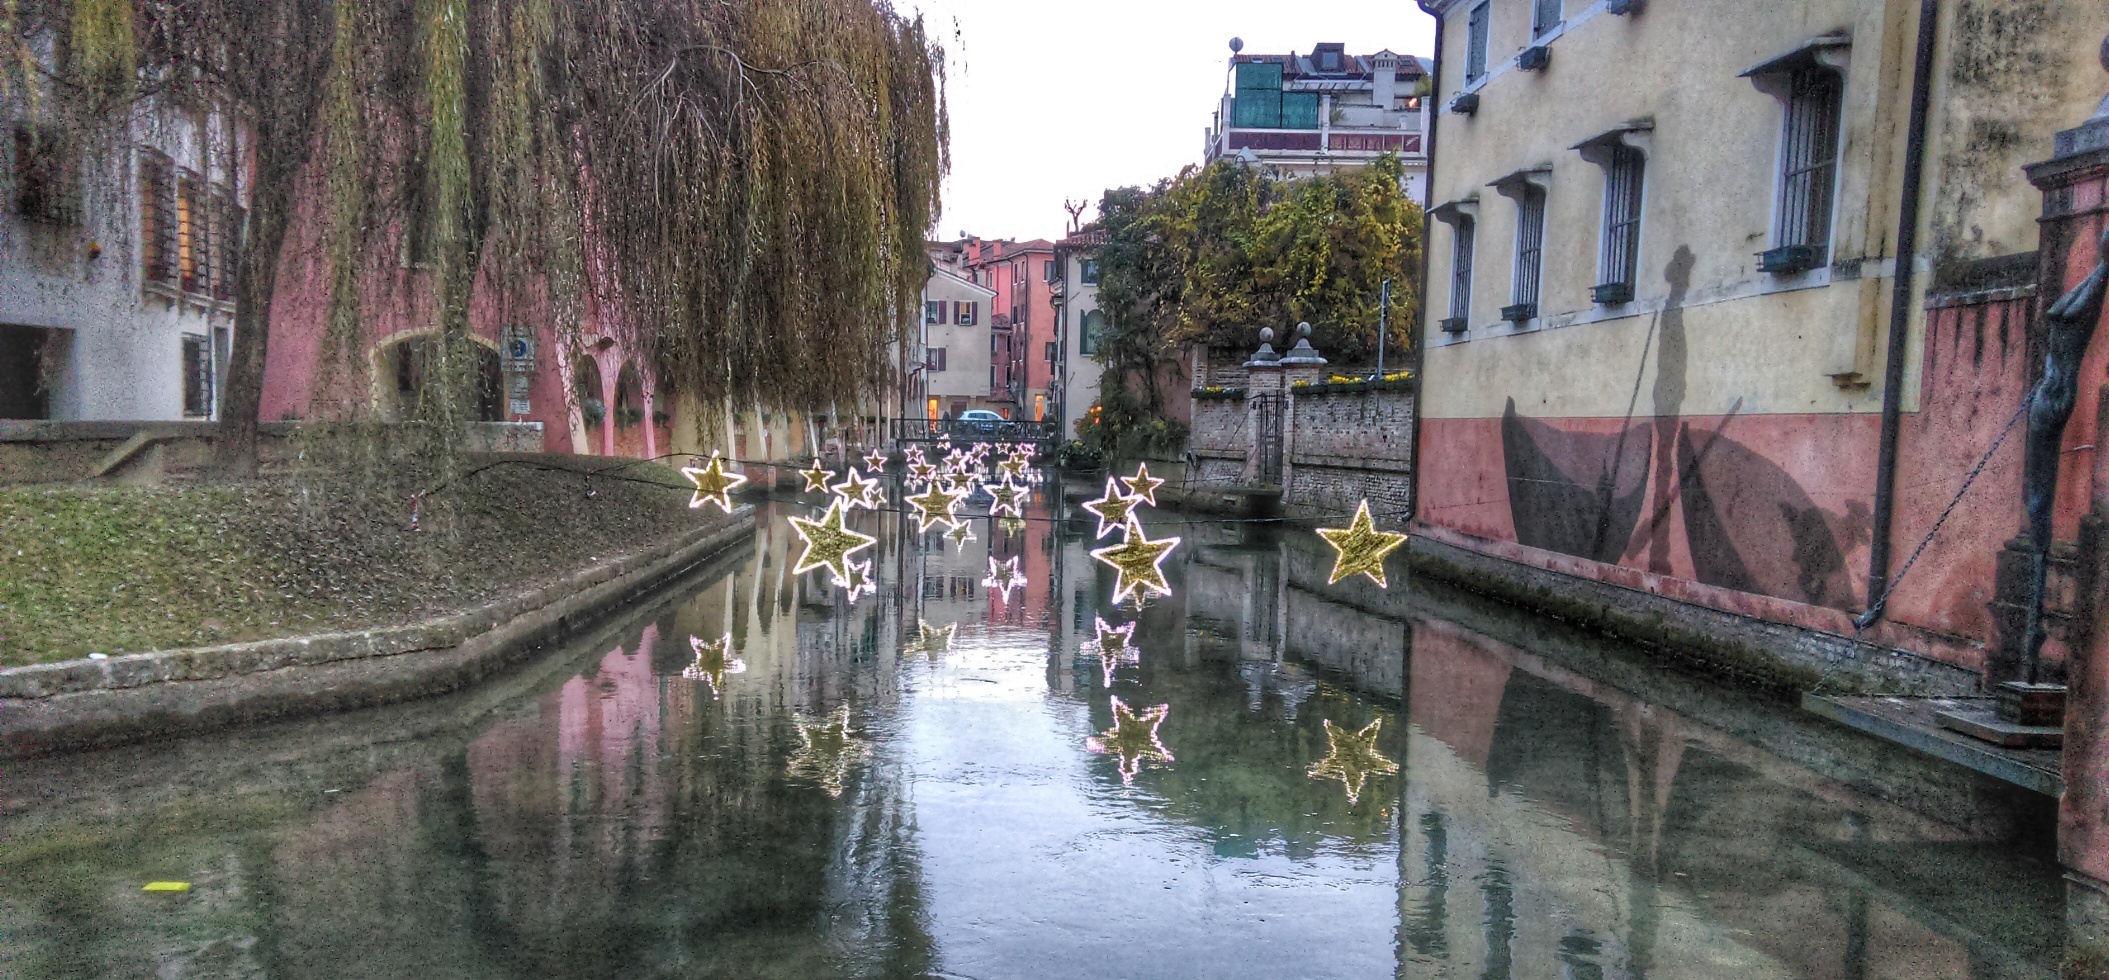 Centro storico di Treviso